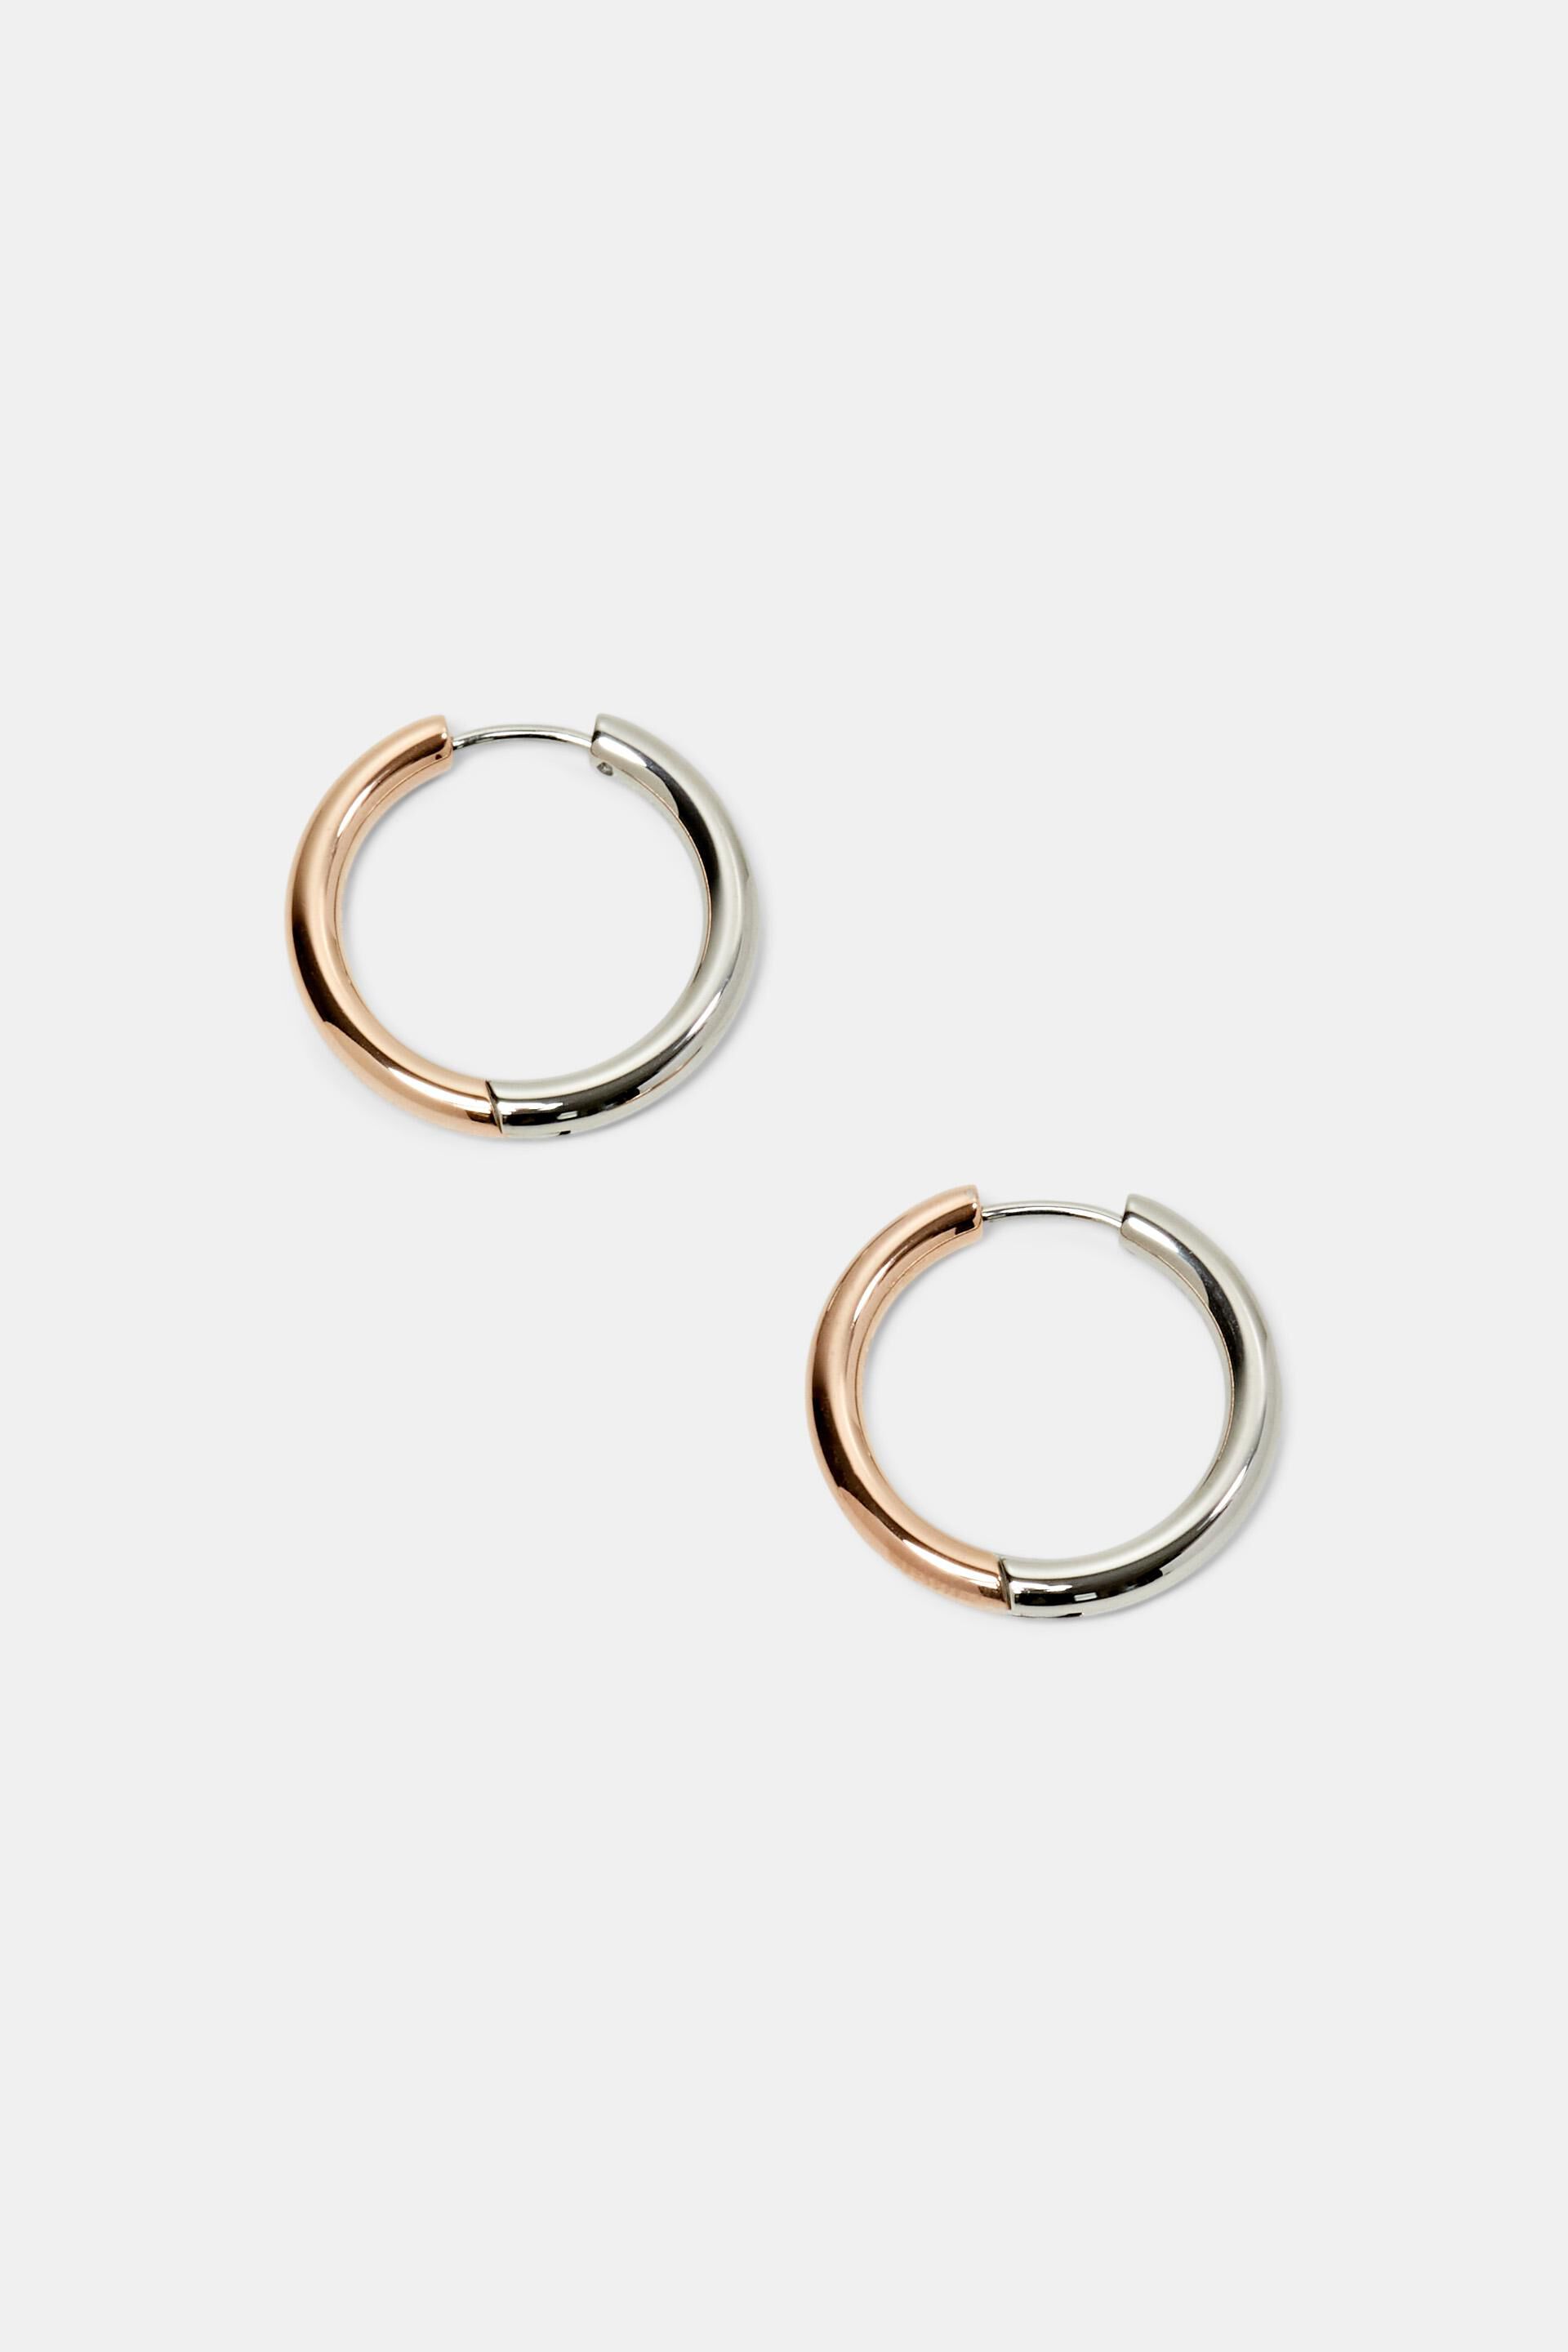 Esprit steel Bi-color hoop earrings, stainless